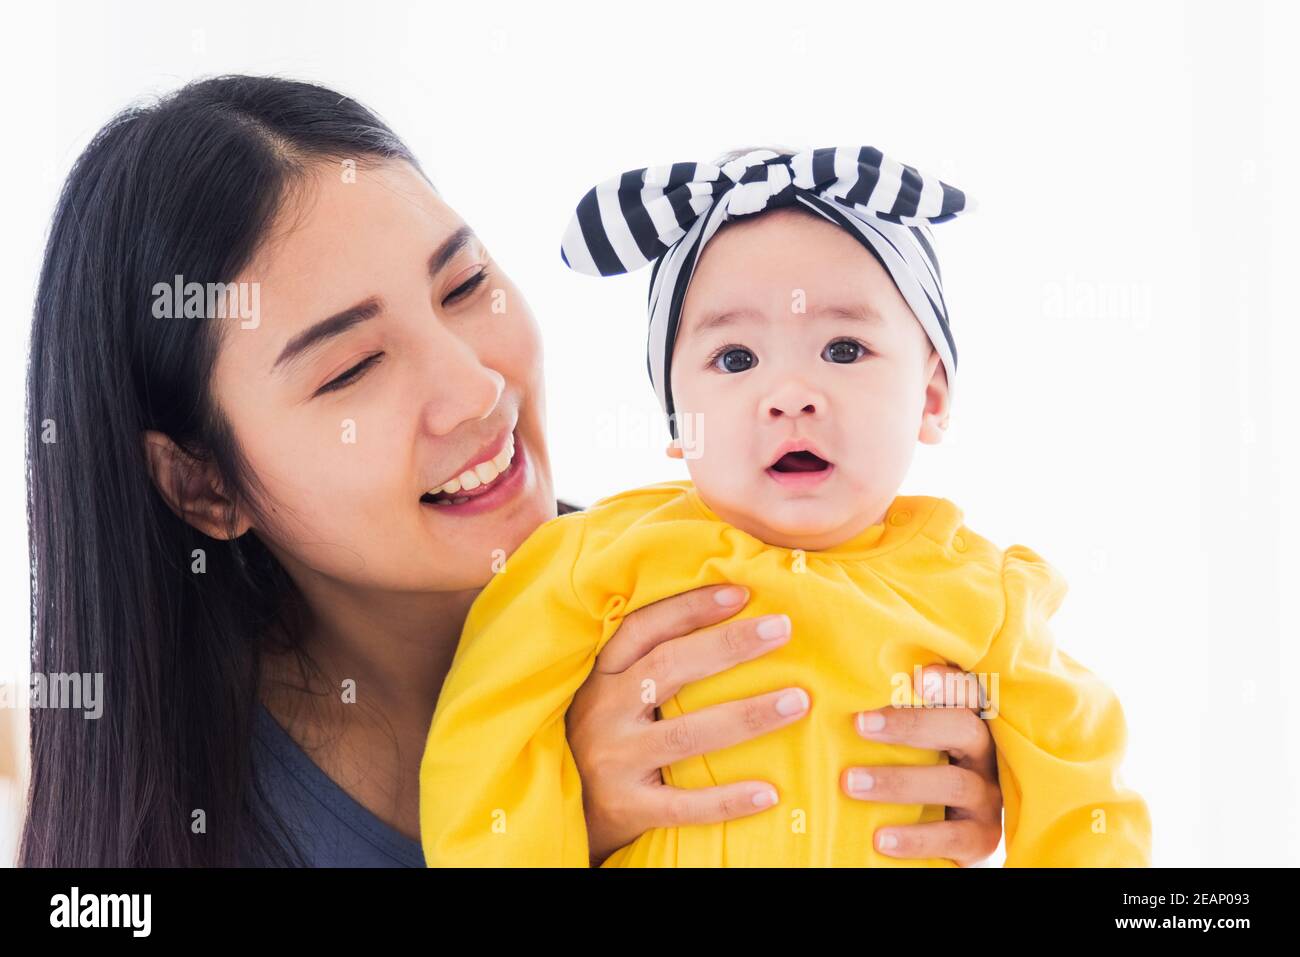 madre jugando y sonriendo con su bebé recién nacido Foto de stock